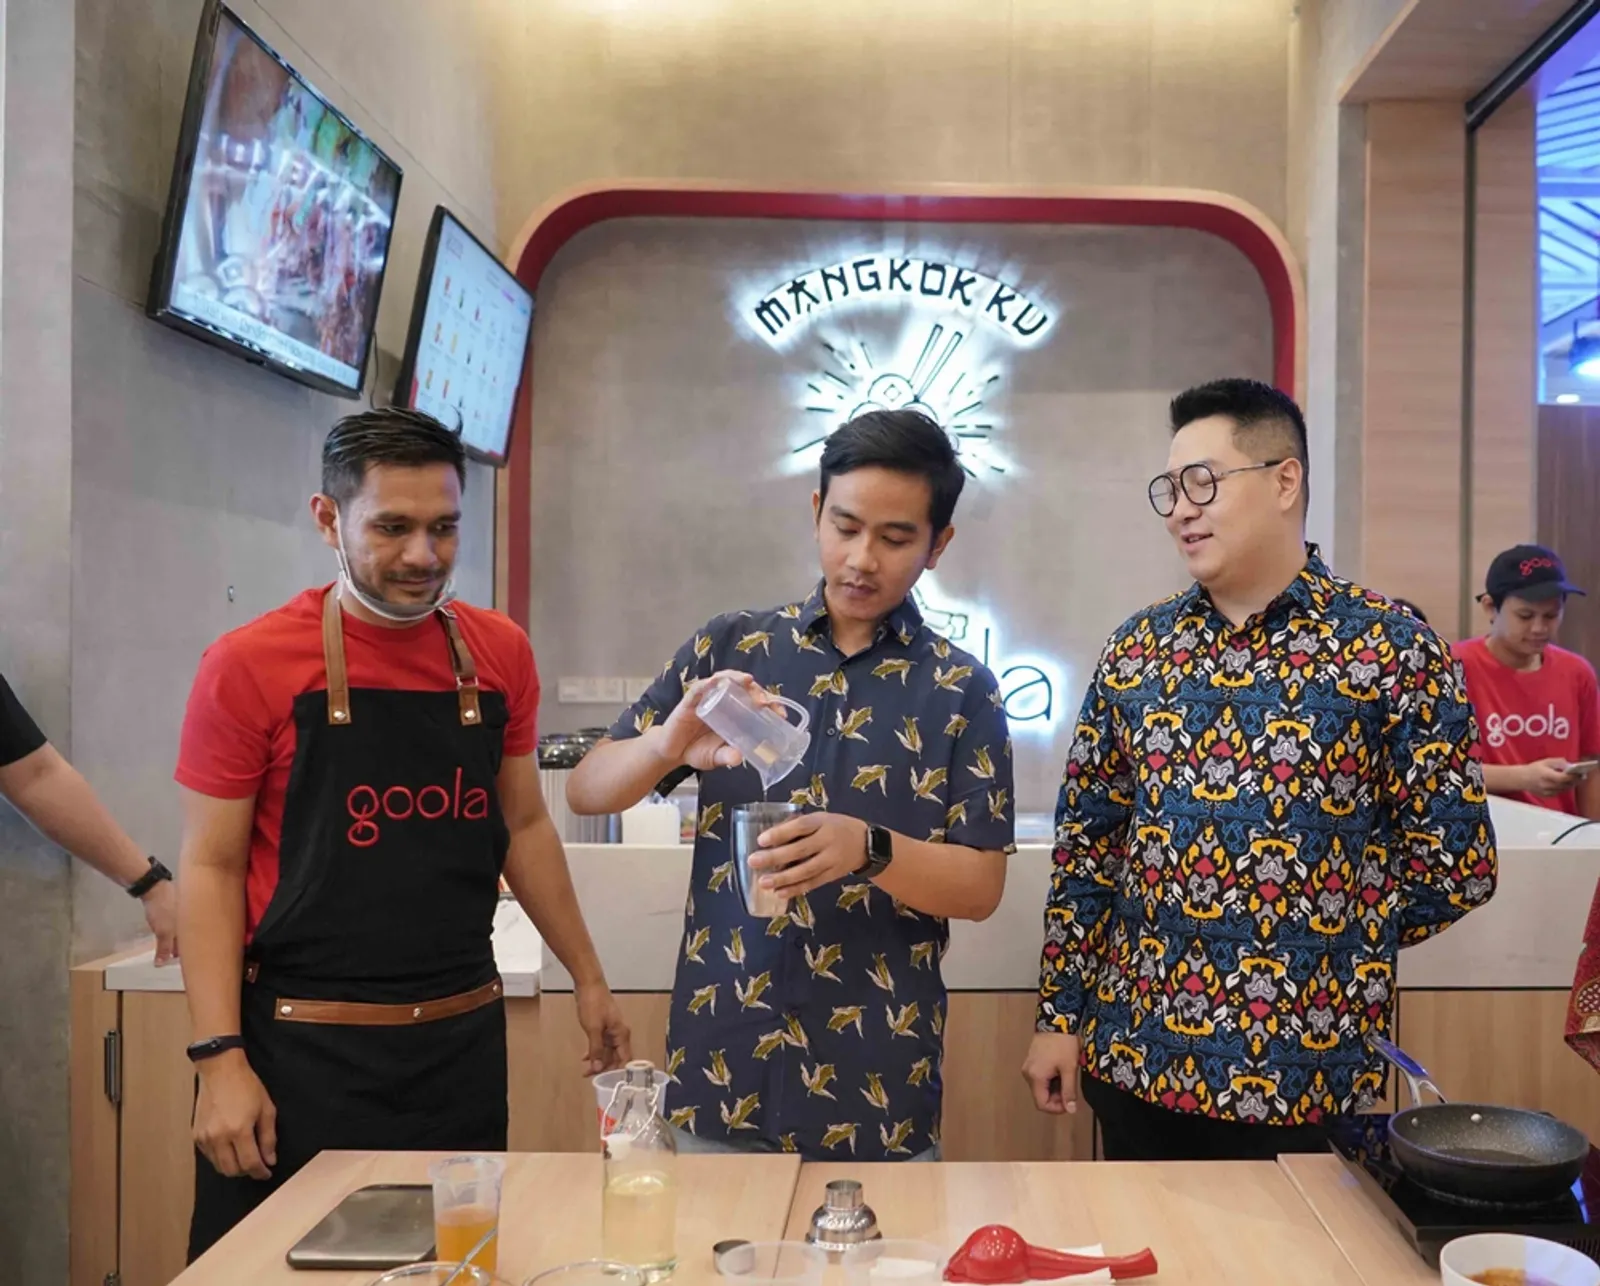 Kombinasi Rasa Nusantara, Goola x Mangkok Ku Kini Hadir di Tangerang